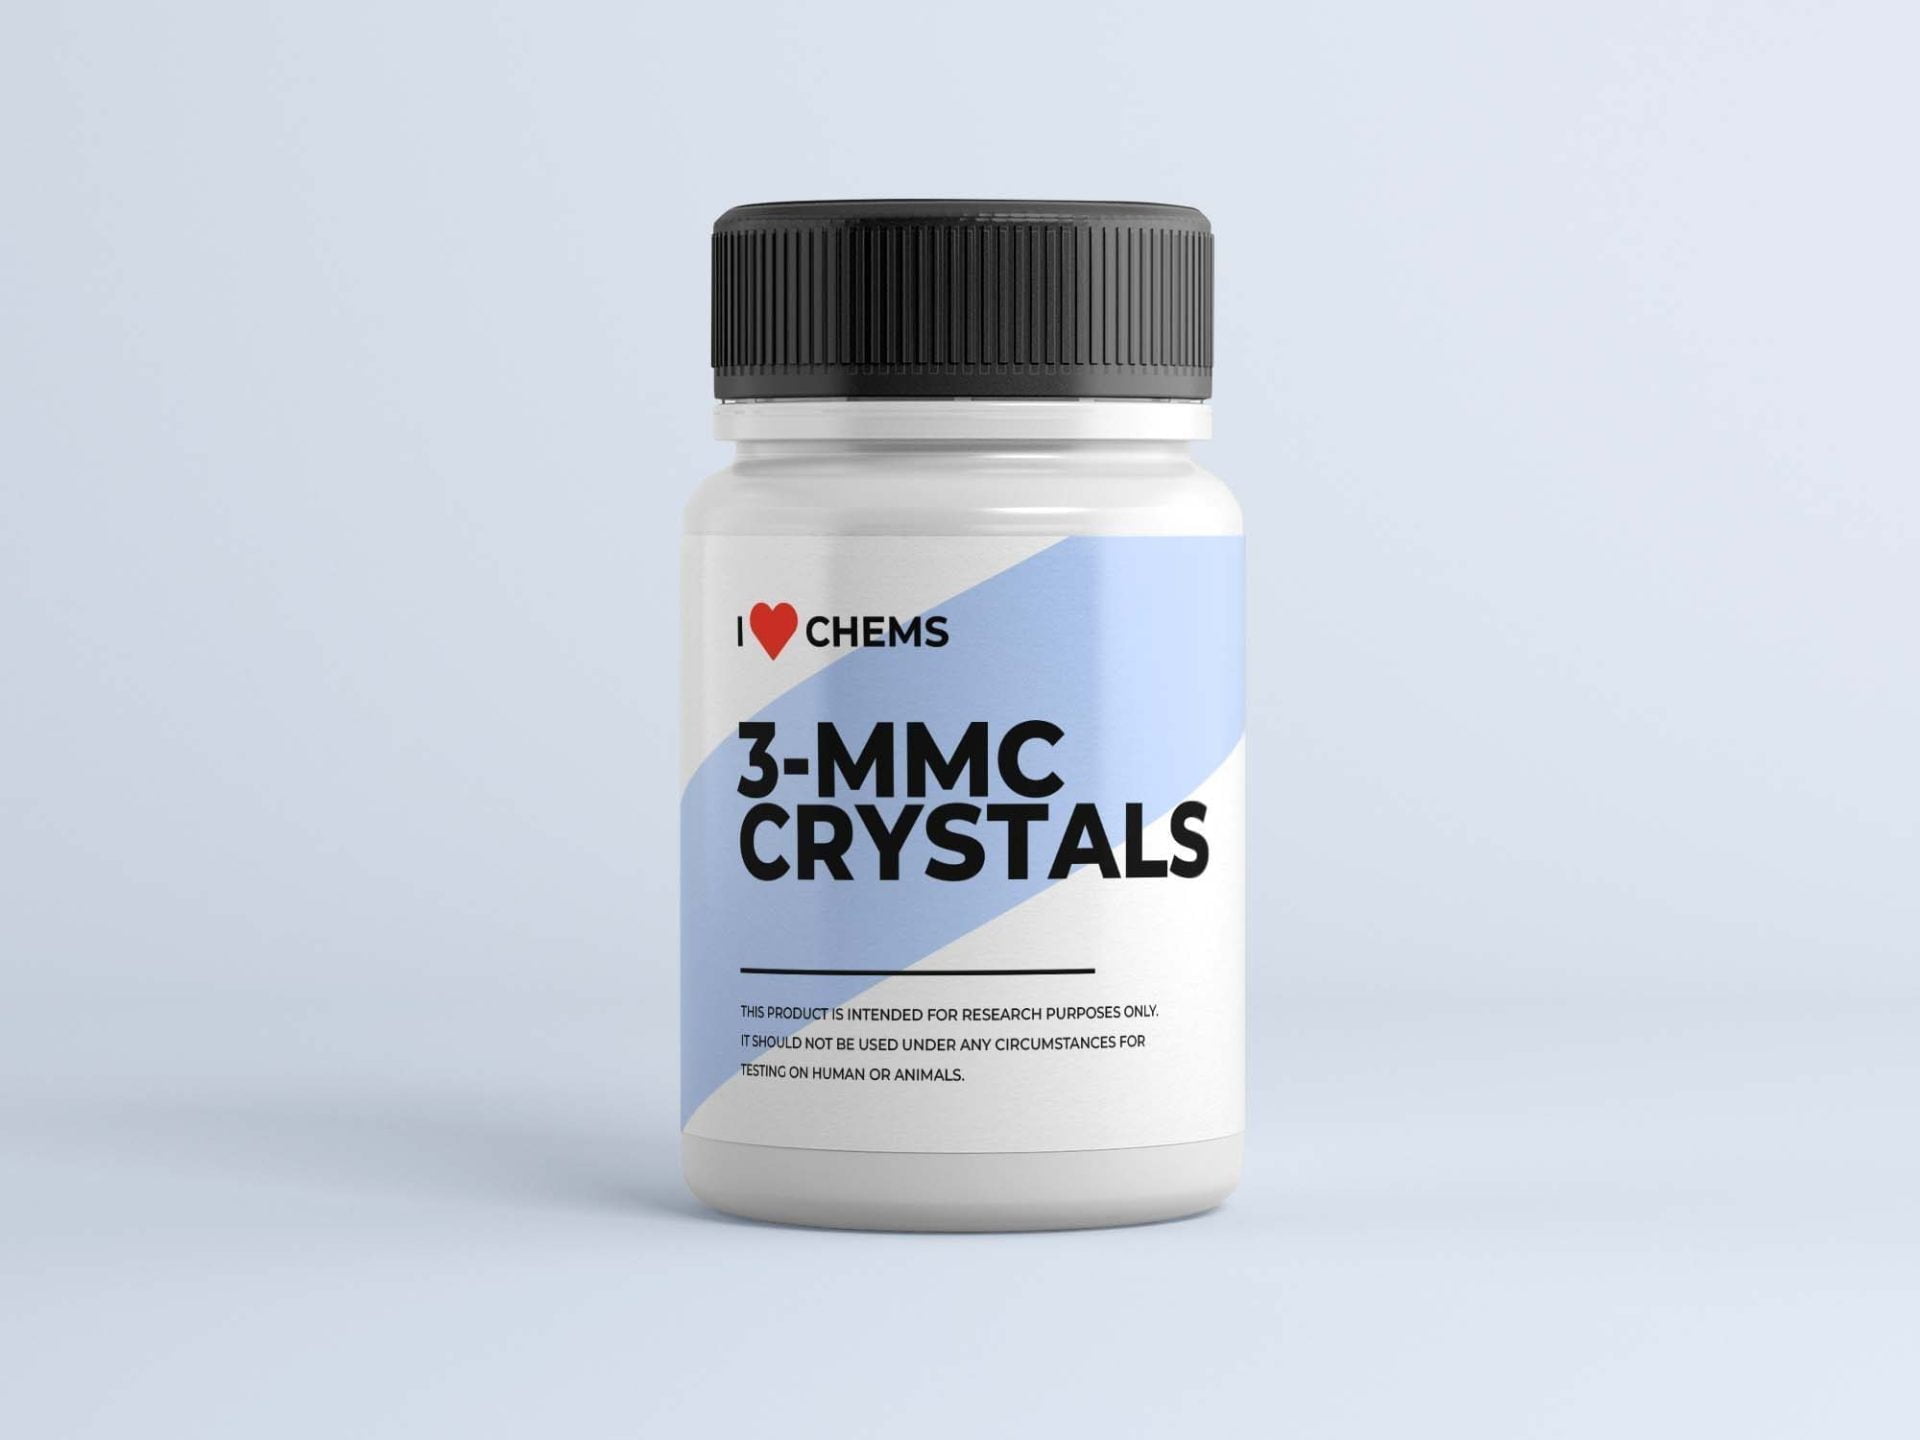 Cumpărați 3 cristale MMC de la I Love Chems. 3 Magazin MMC în UE. Furnizor de încredere RC